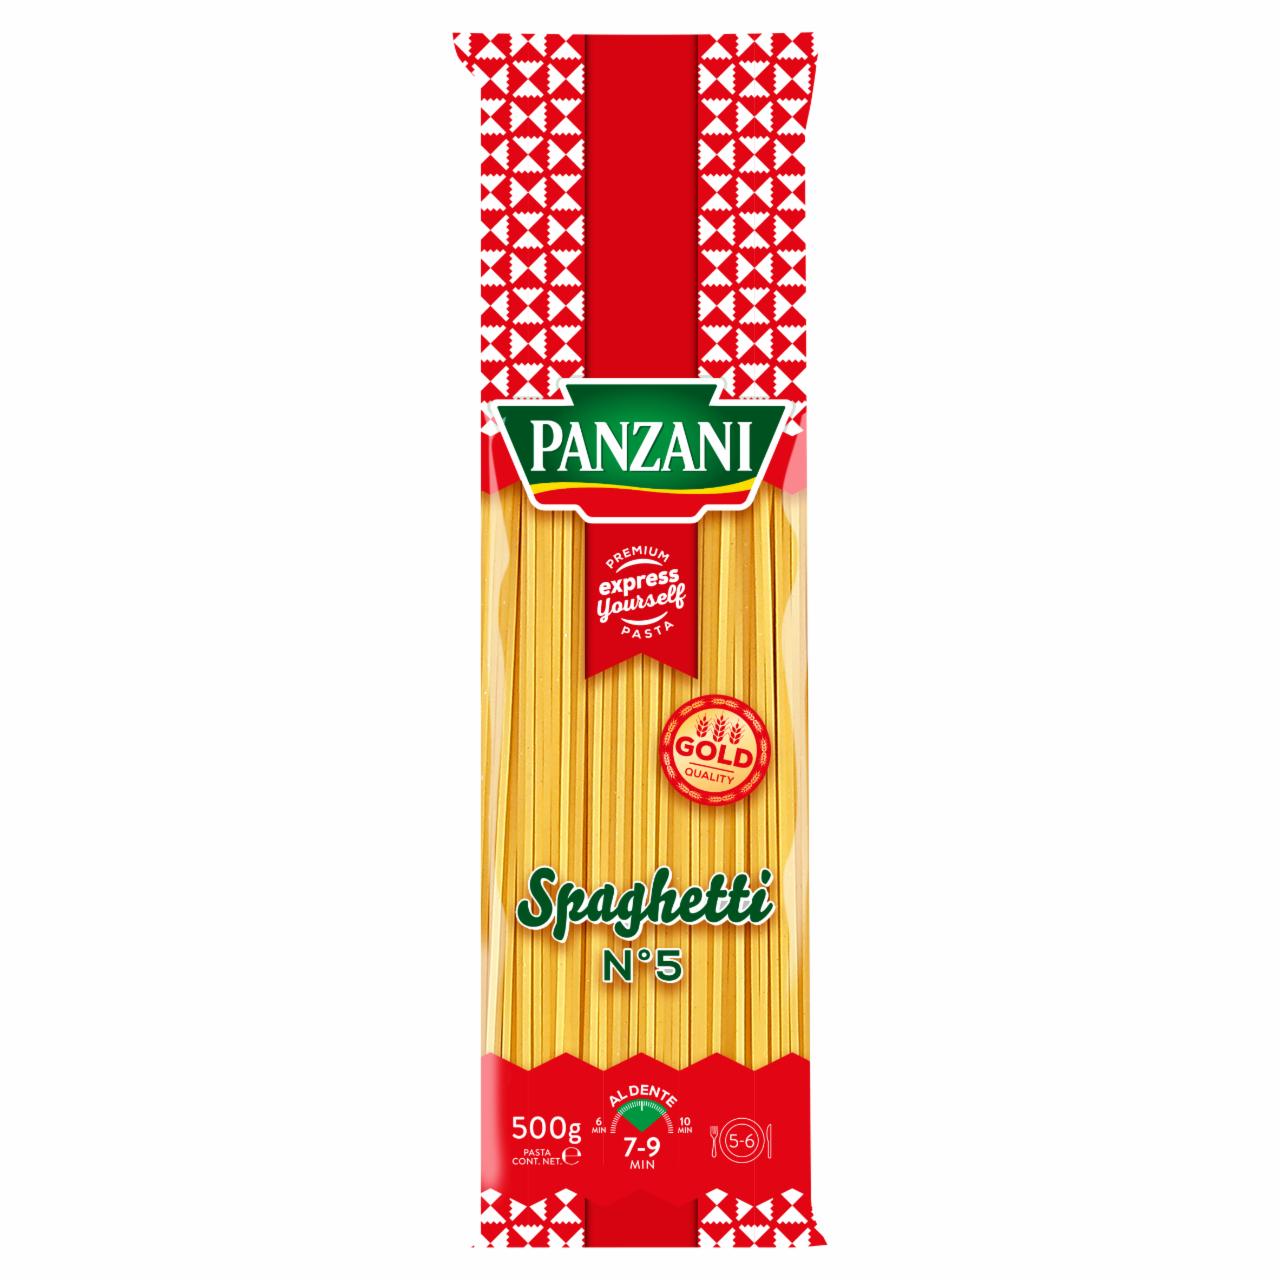 Képek - Panzani Spaghetti száraztészta durumbúzából 500 g